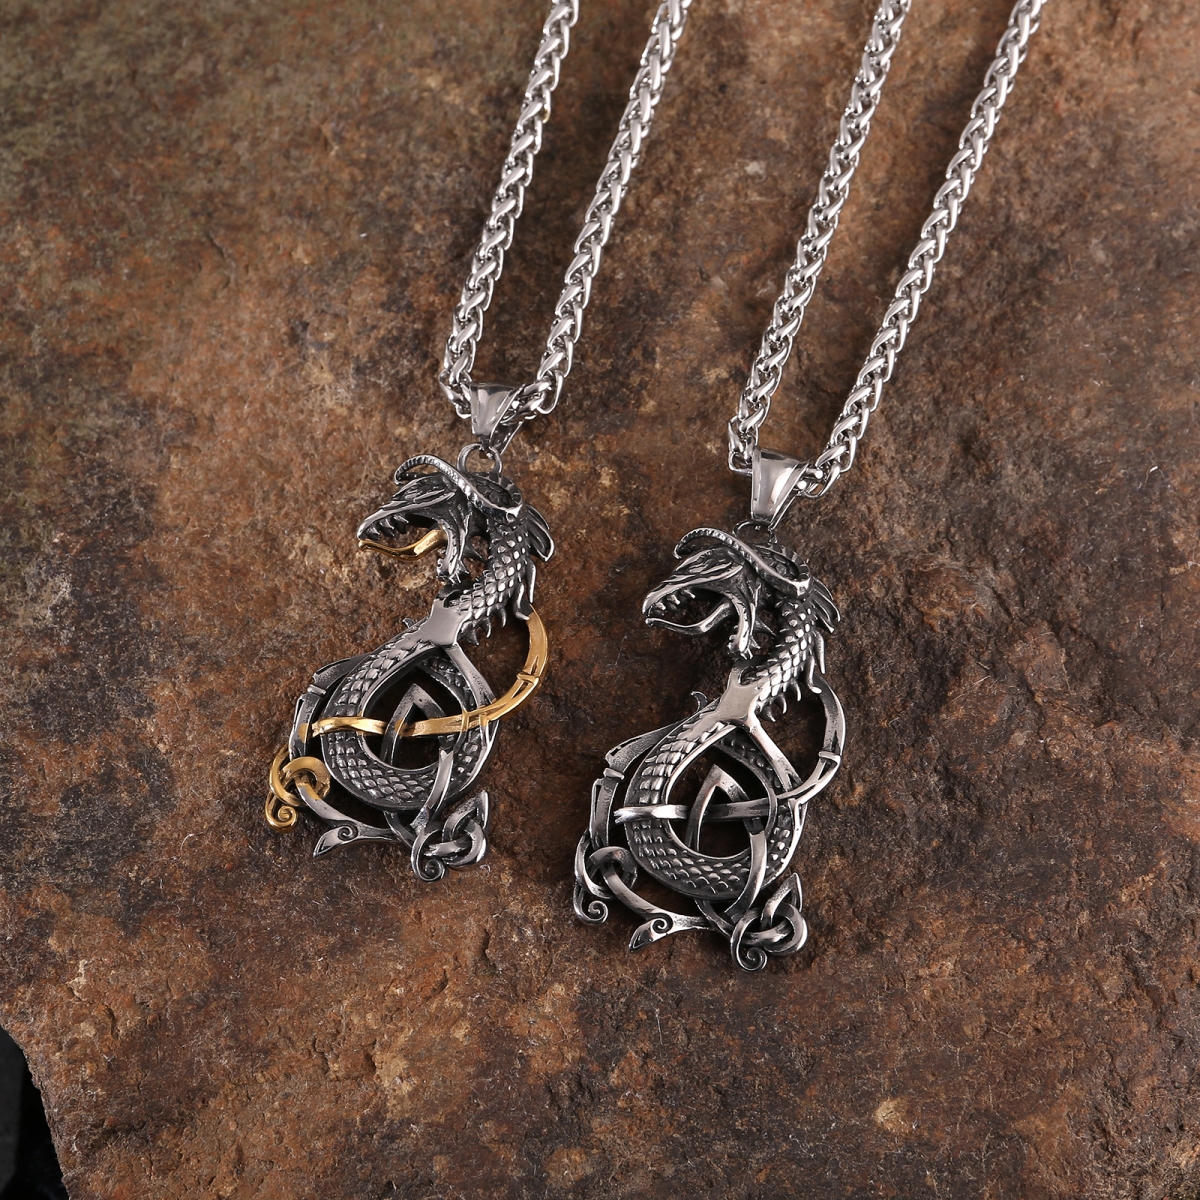 Jormungandr Necklace US$2.9/PC-NORSECOLLECTION- Viking Jewelry,Viking Necklace,Viking Bracelet,Viking Rings,Viking Mugs,Viking Accessories,Viking Crafts